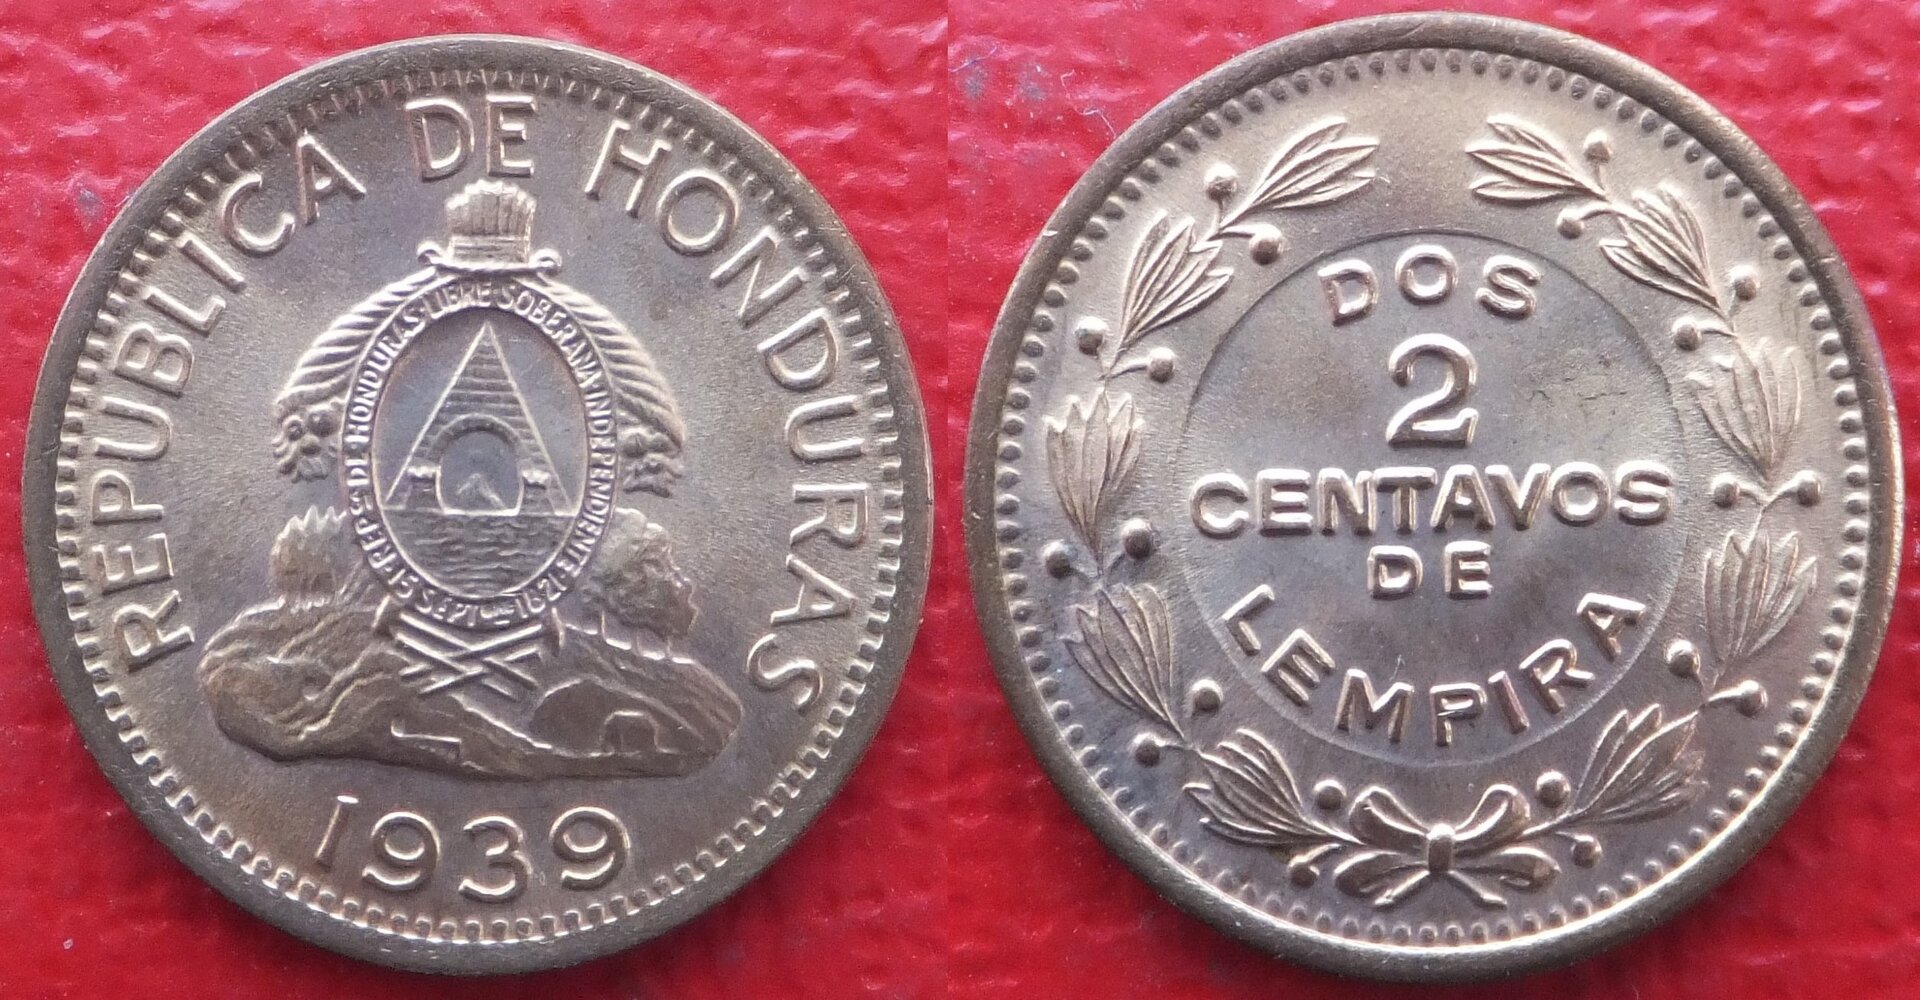 Honduras 2 centavos 1939 (3).jpg